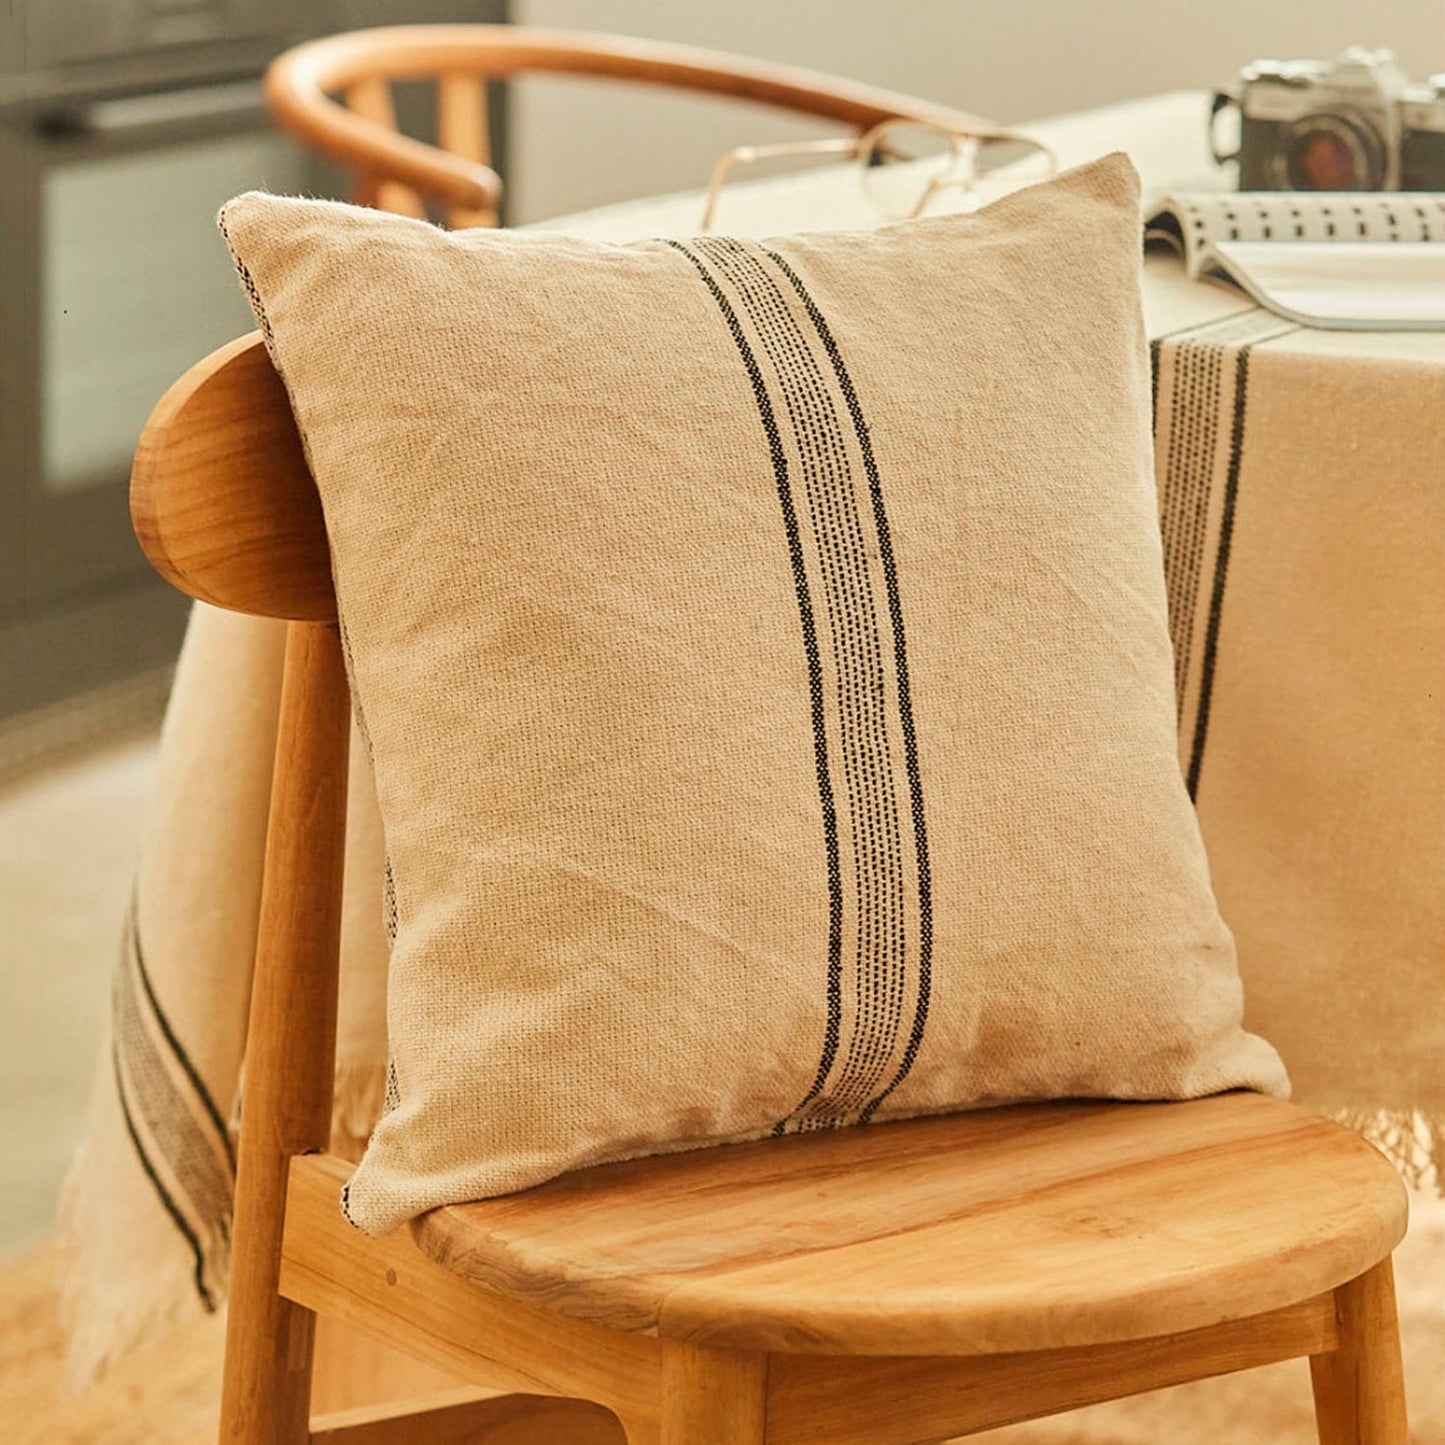 Juego de cojines para sofá de color beige, funda de almohada de 45 x 45 cm